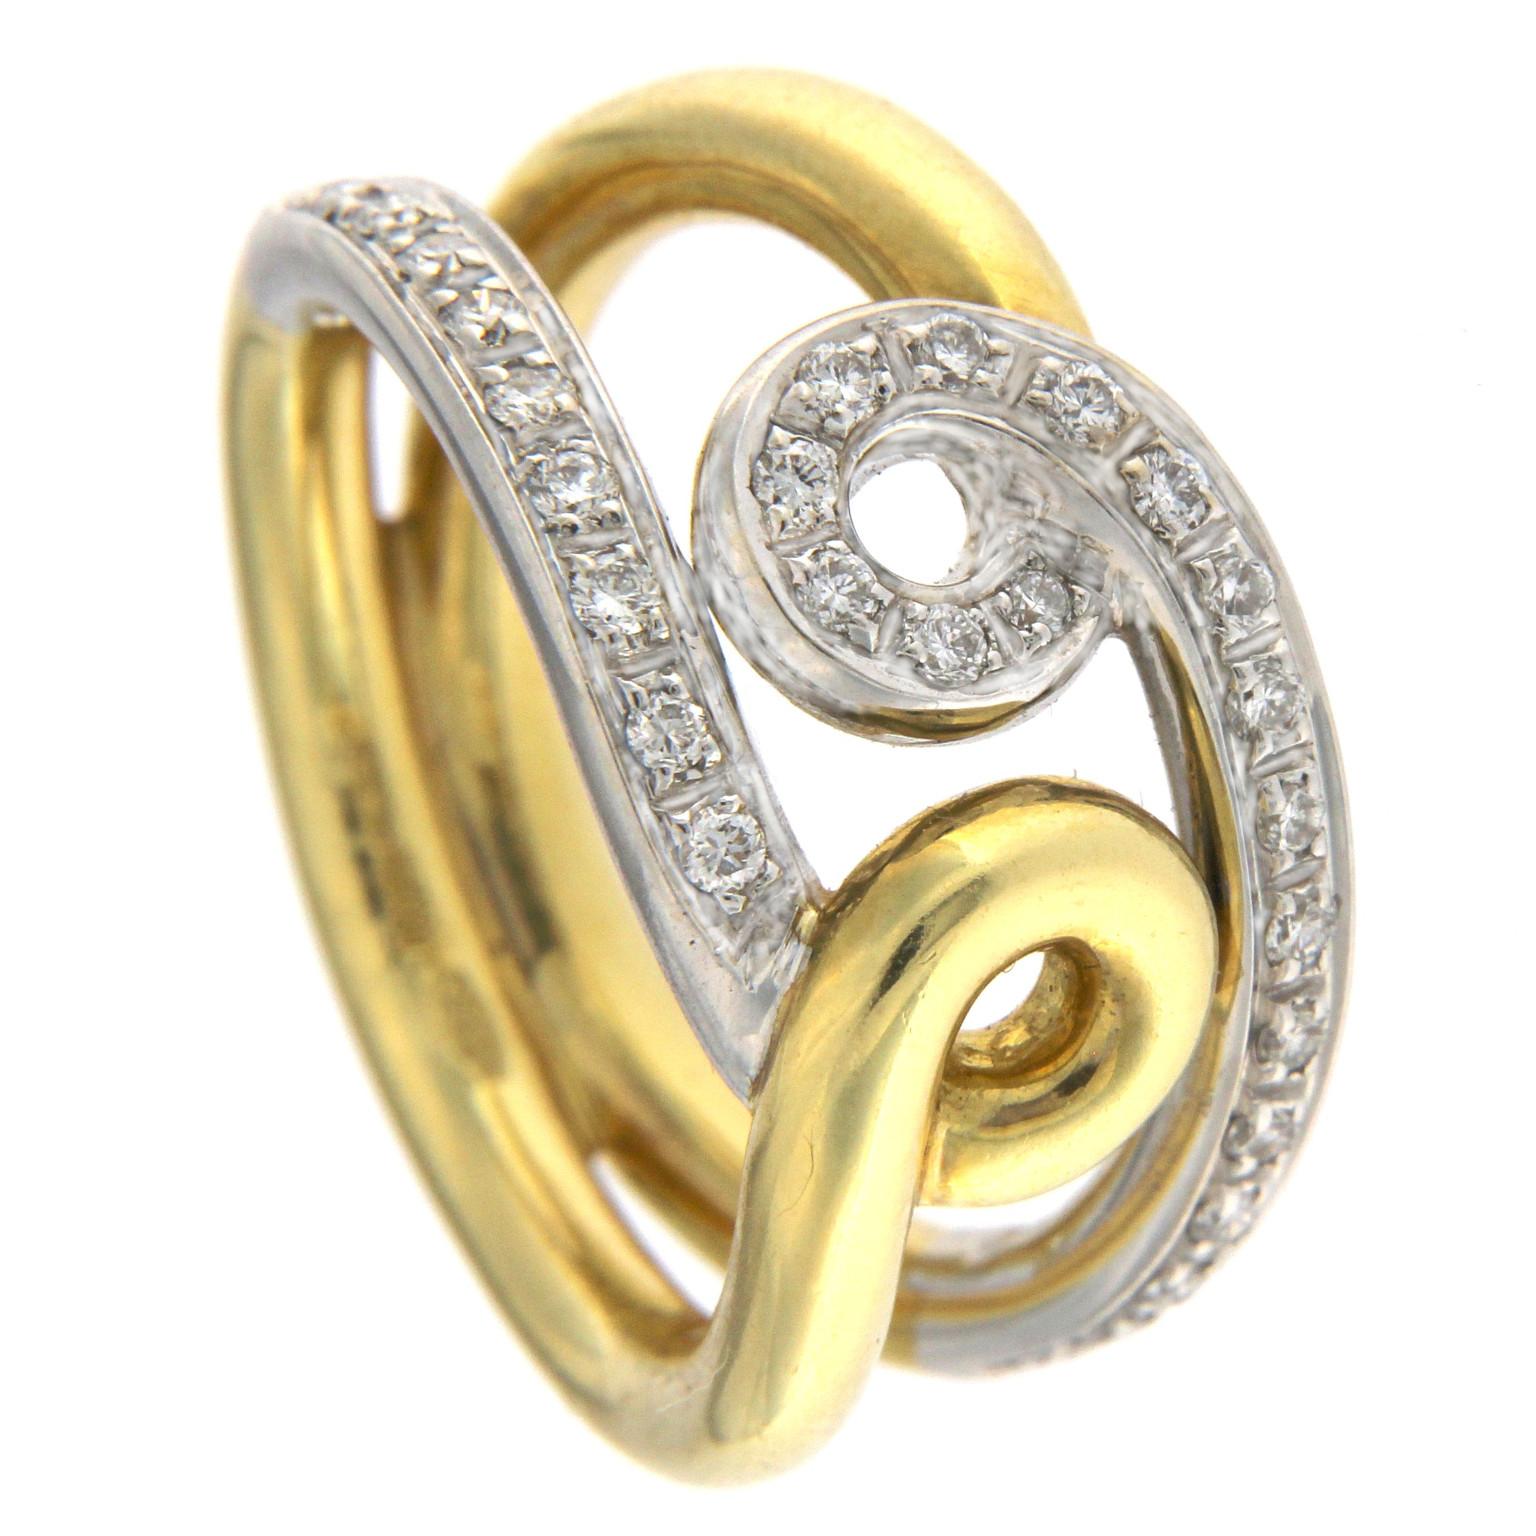 Ring in dünner, runder Fassoptik, der an das Design der gesamten Double-Drop-Kollektion erinnert.
Ganz aus Gelbgold mit einem Stab, der in der Mitte einen doppelten Tropfen aus Weißgold bildet, verziert mit 28 Diamanten mit einem Gesamtgewicht von